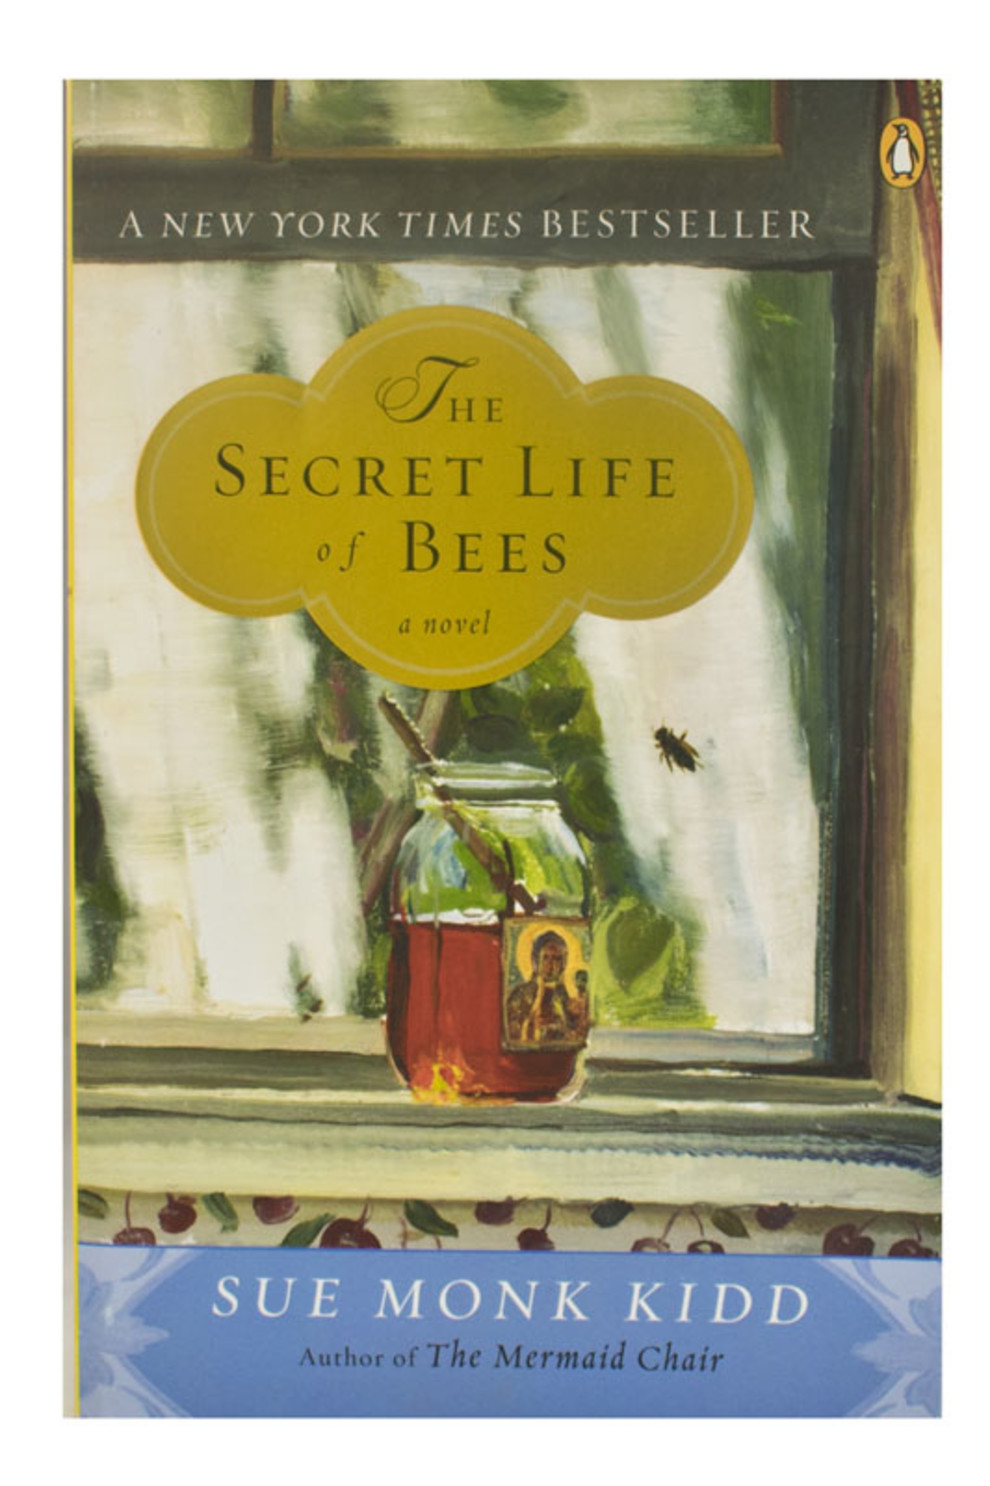 Книга о прощении, людях и любви "Тайная жизнь пчел" американской писательницы Сью Кидд.